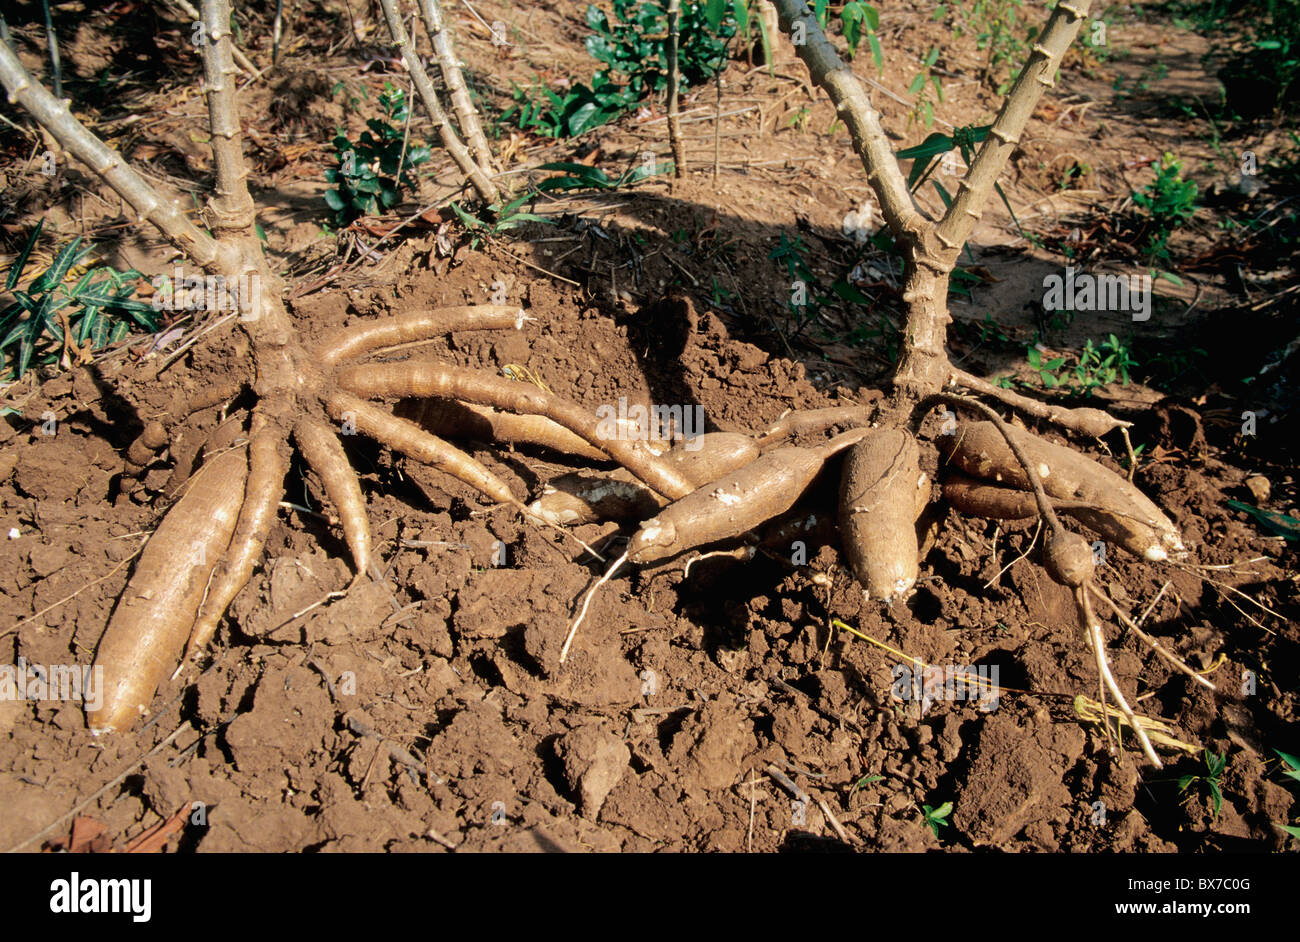 La récolte de manioc, Korat, Thaïlande Banque D'Images